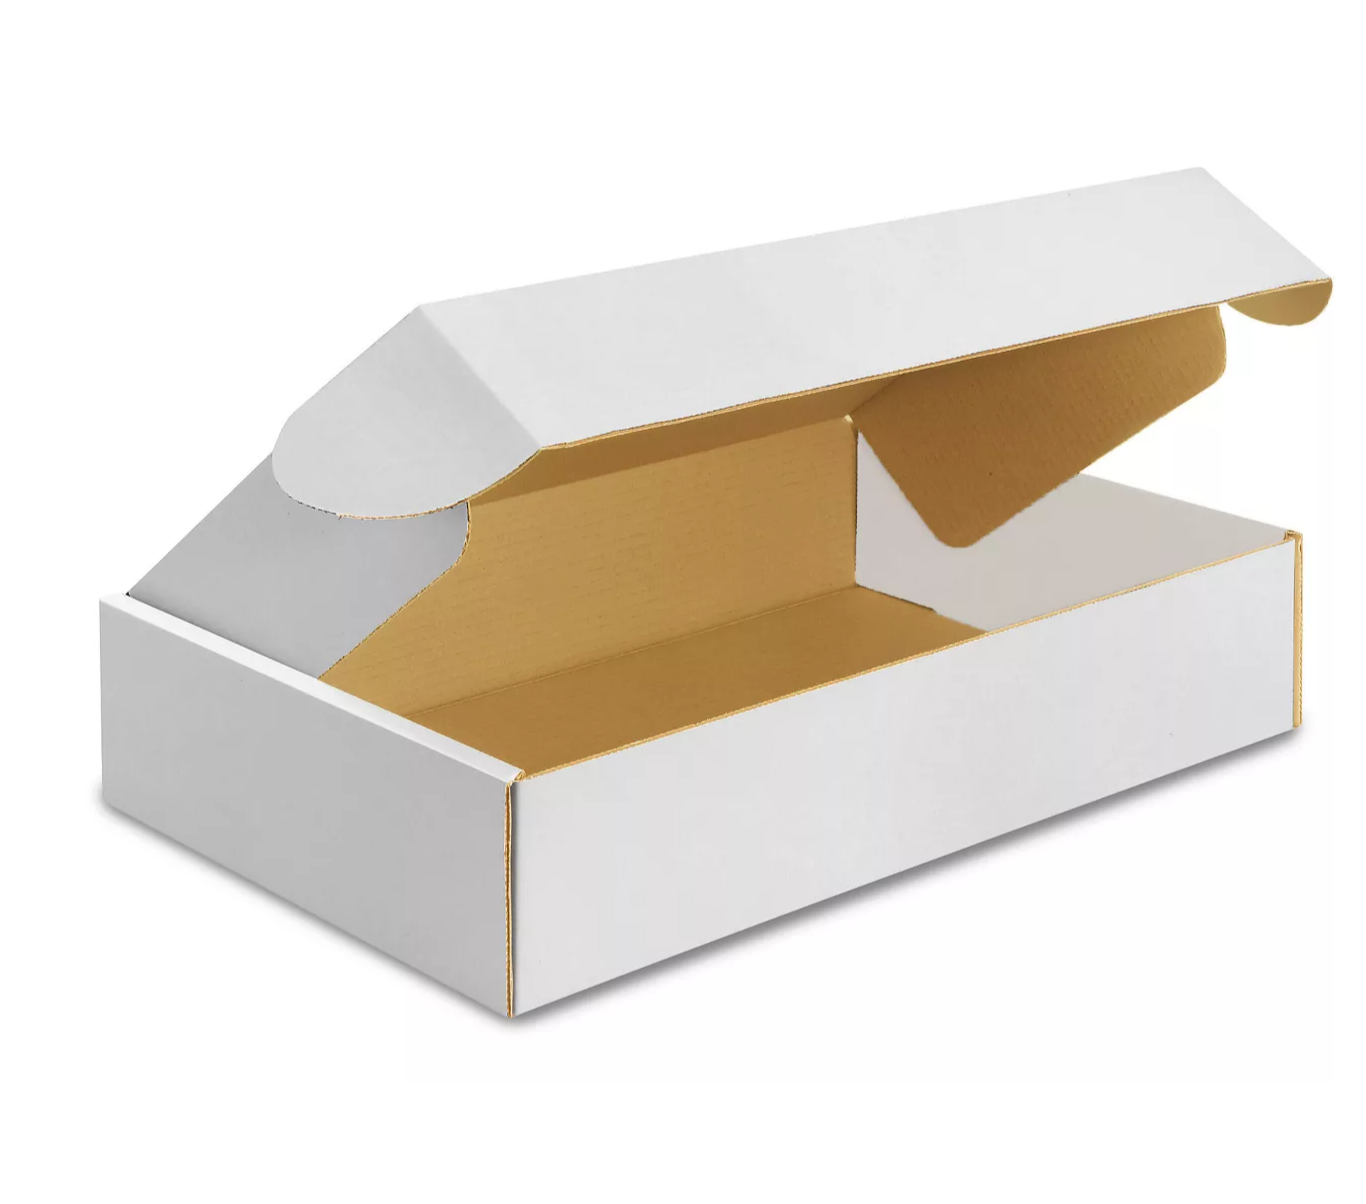 Cajas de Envío de Cartón Blanco - Extra Grandes